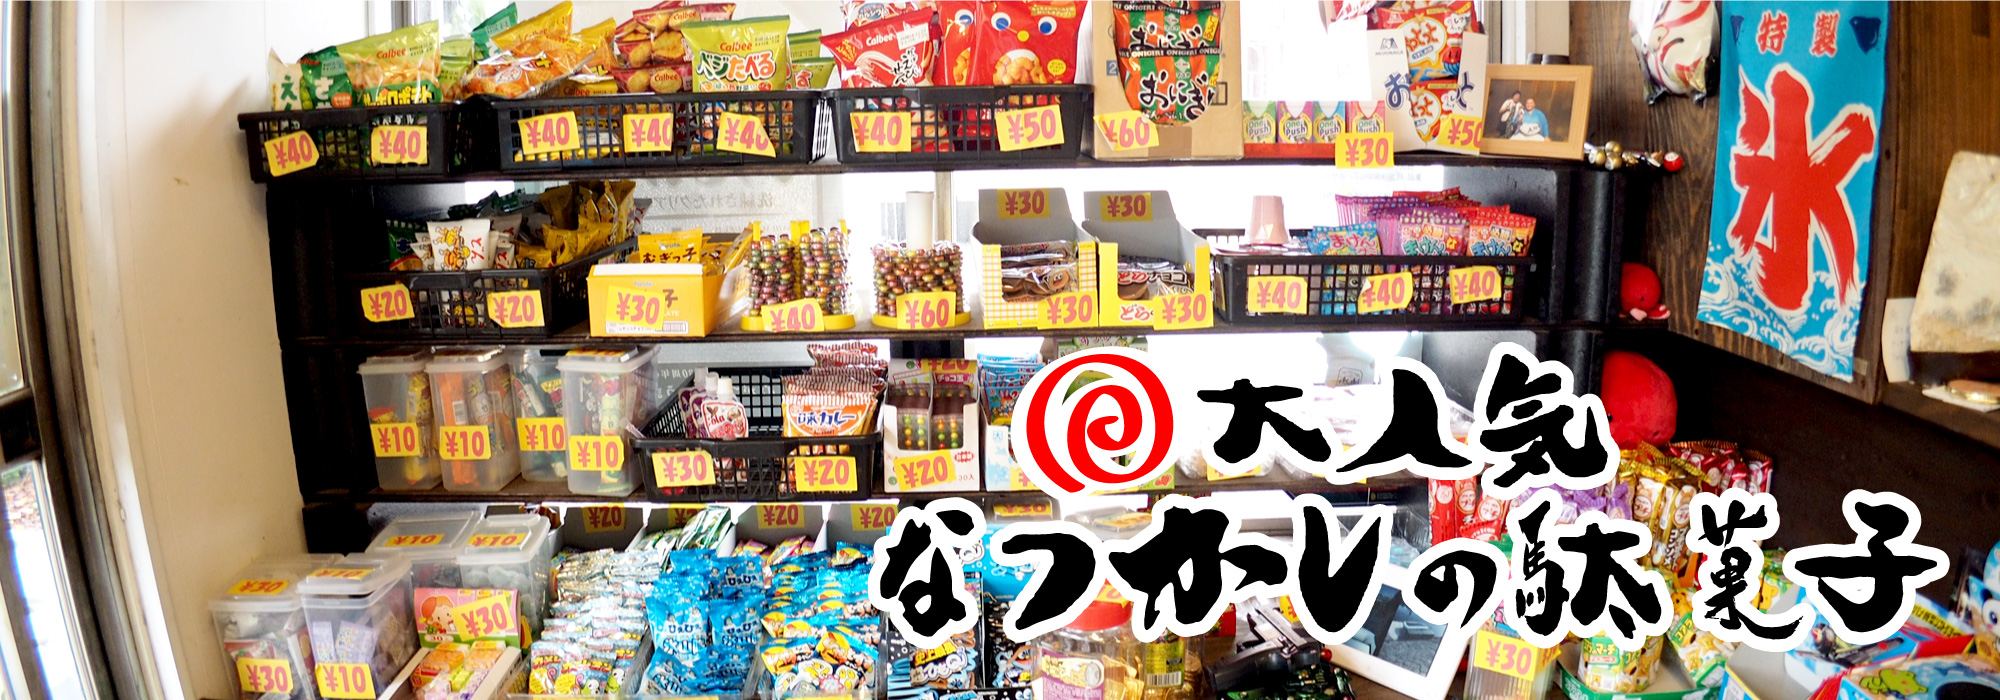 昭和区のたこ焼き屋 杁中商店街 隼人池 もりたこイメージ3